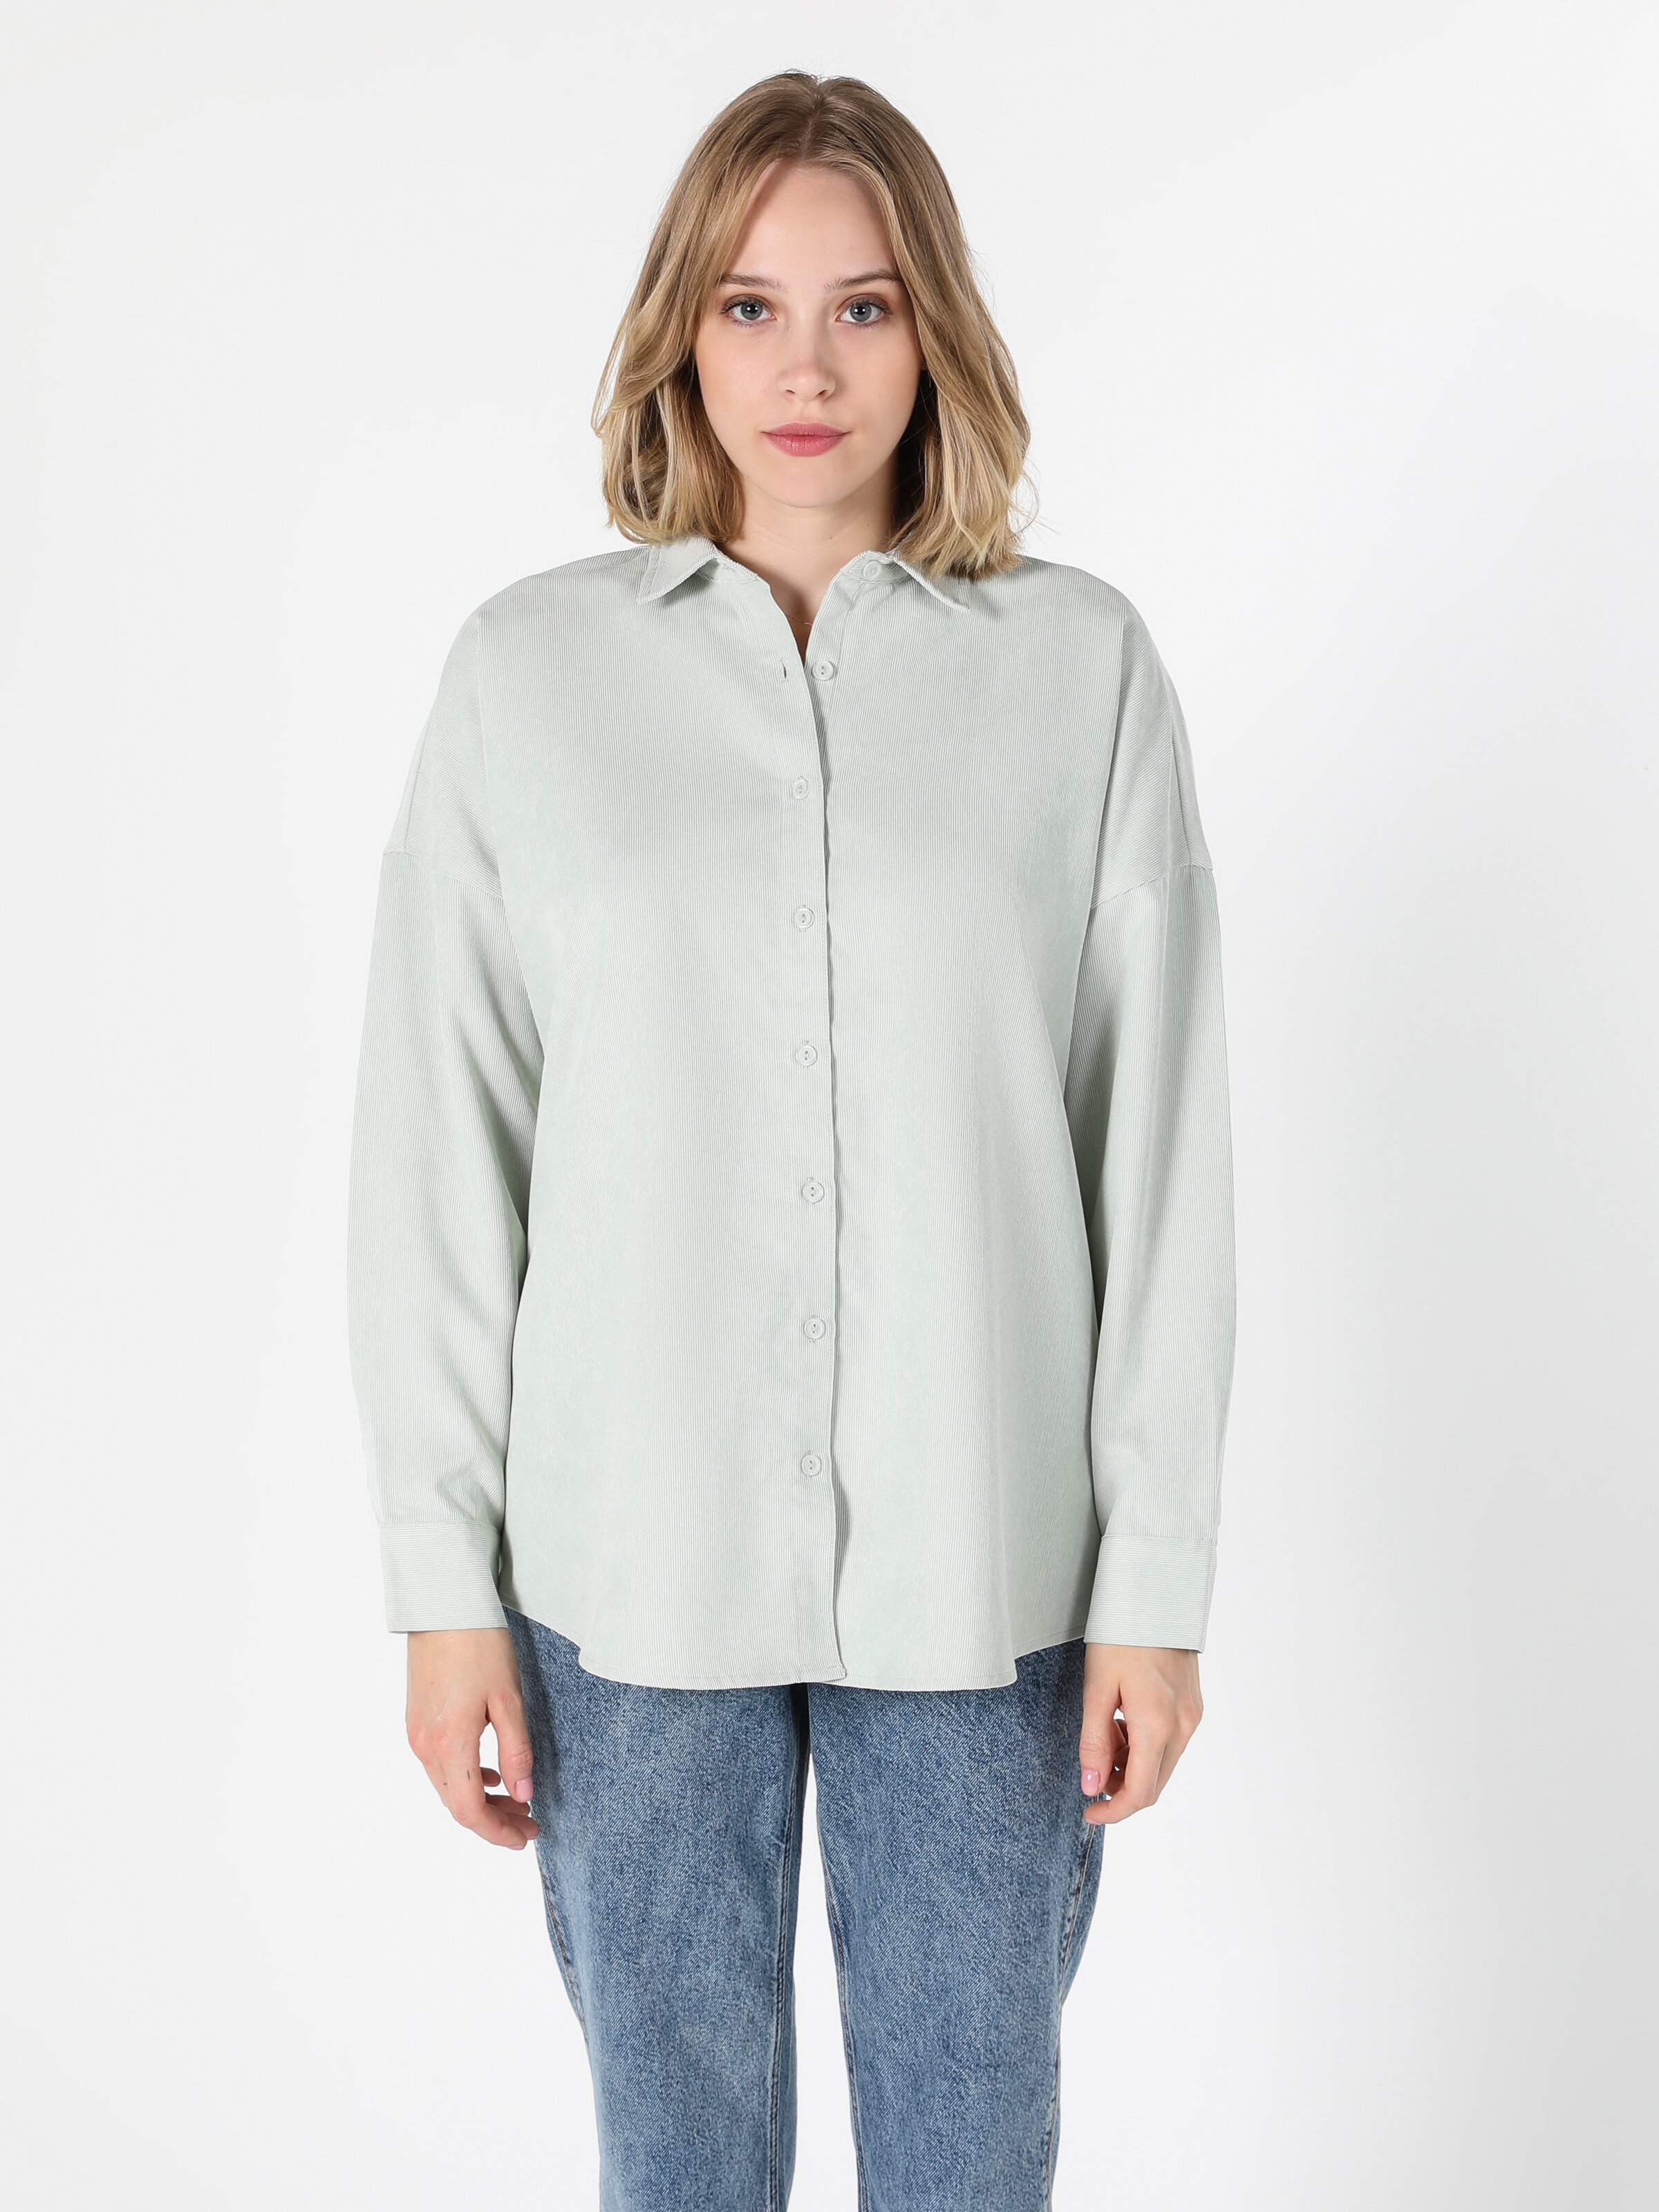 Afișați detalii pentru Bluza Cu Maneca Lunga De Dama Alb Regular Fit 